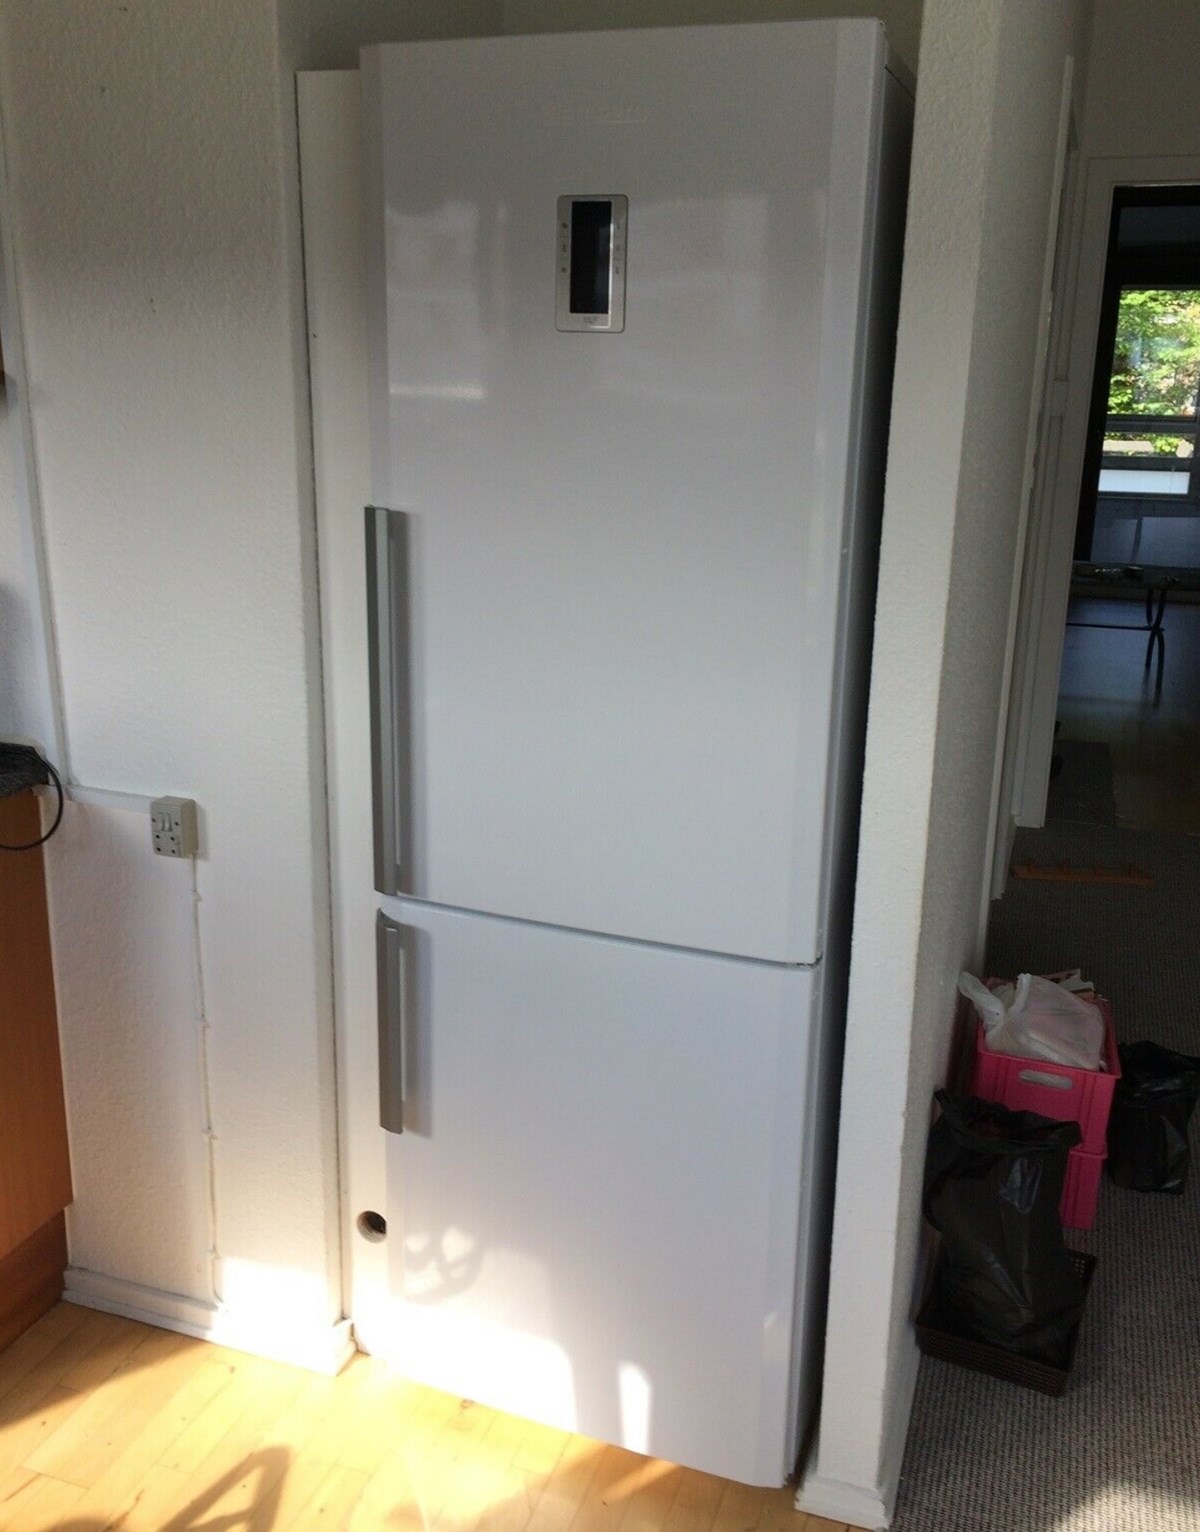 Bent fra Hvidovre har dette køleskab til salg på DBA, og det koster 1.000 kroner. Køleskabet er af mærket Blomberg model KND 9653 og kan rumme 219 liter køl og 99 liter frys. Det er i energiklasse A++. ’Virker perfekt’, skriver Bent i DBA-annoncen.